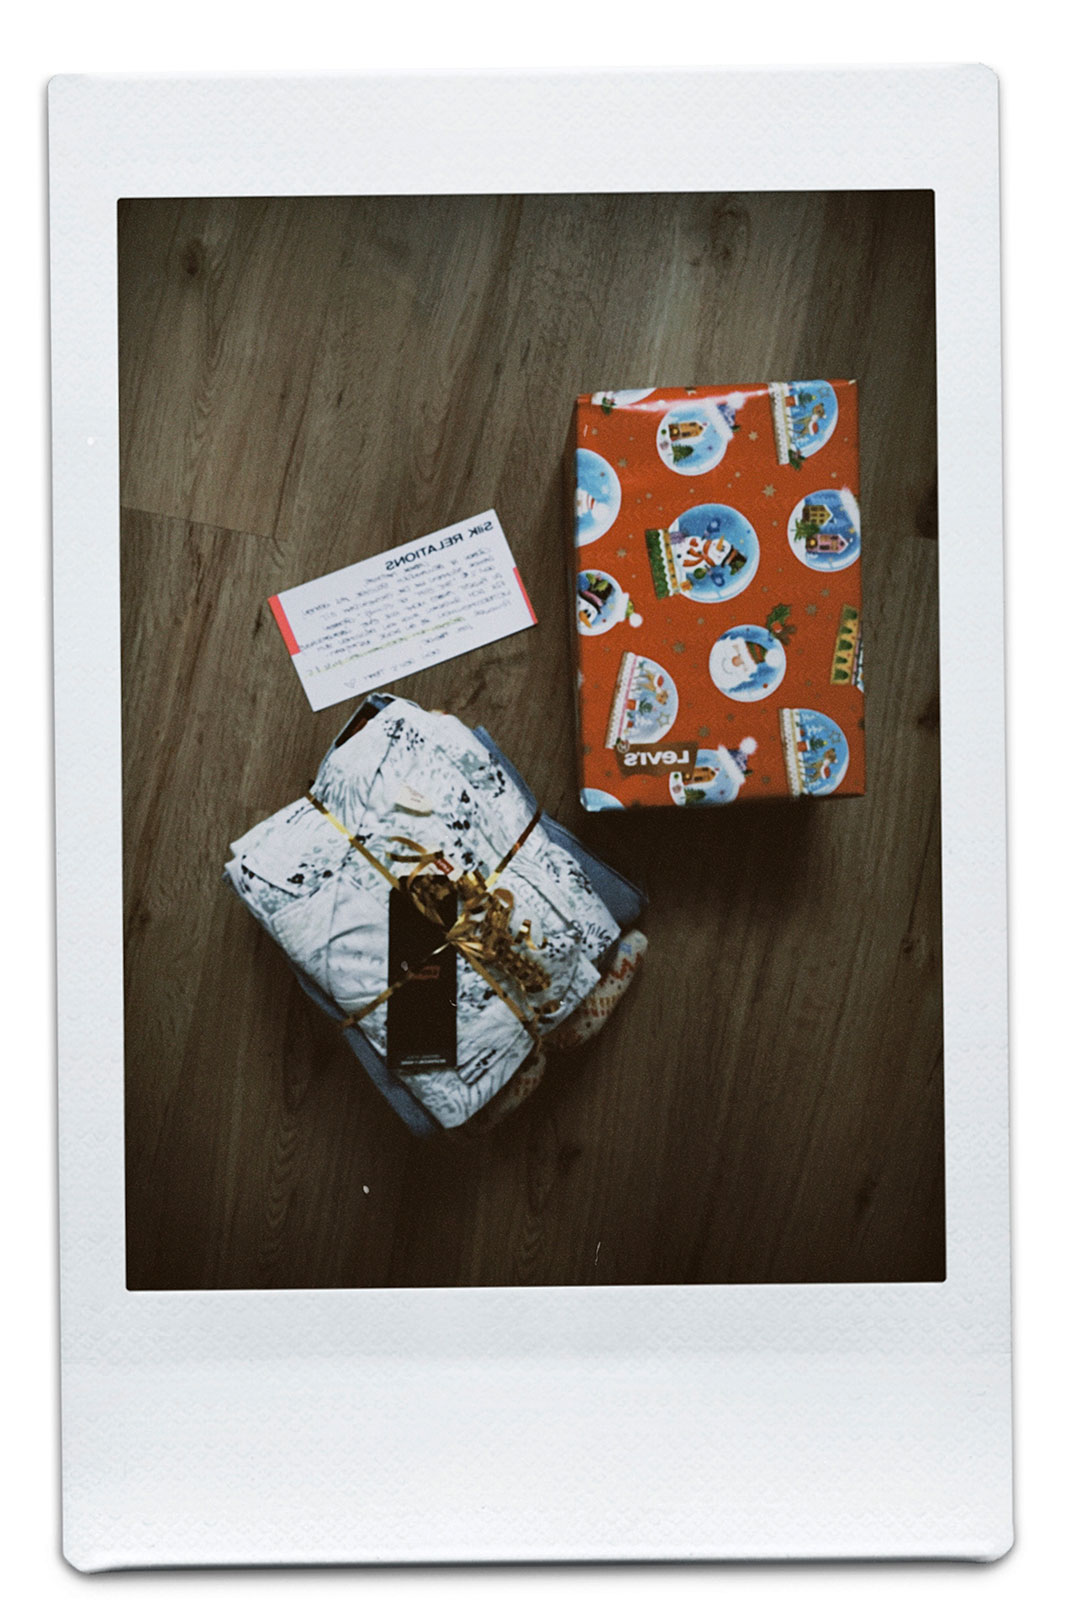 Polaroid Foto von Geschenken.